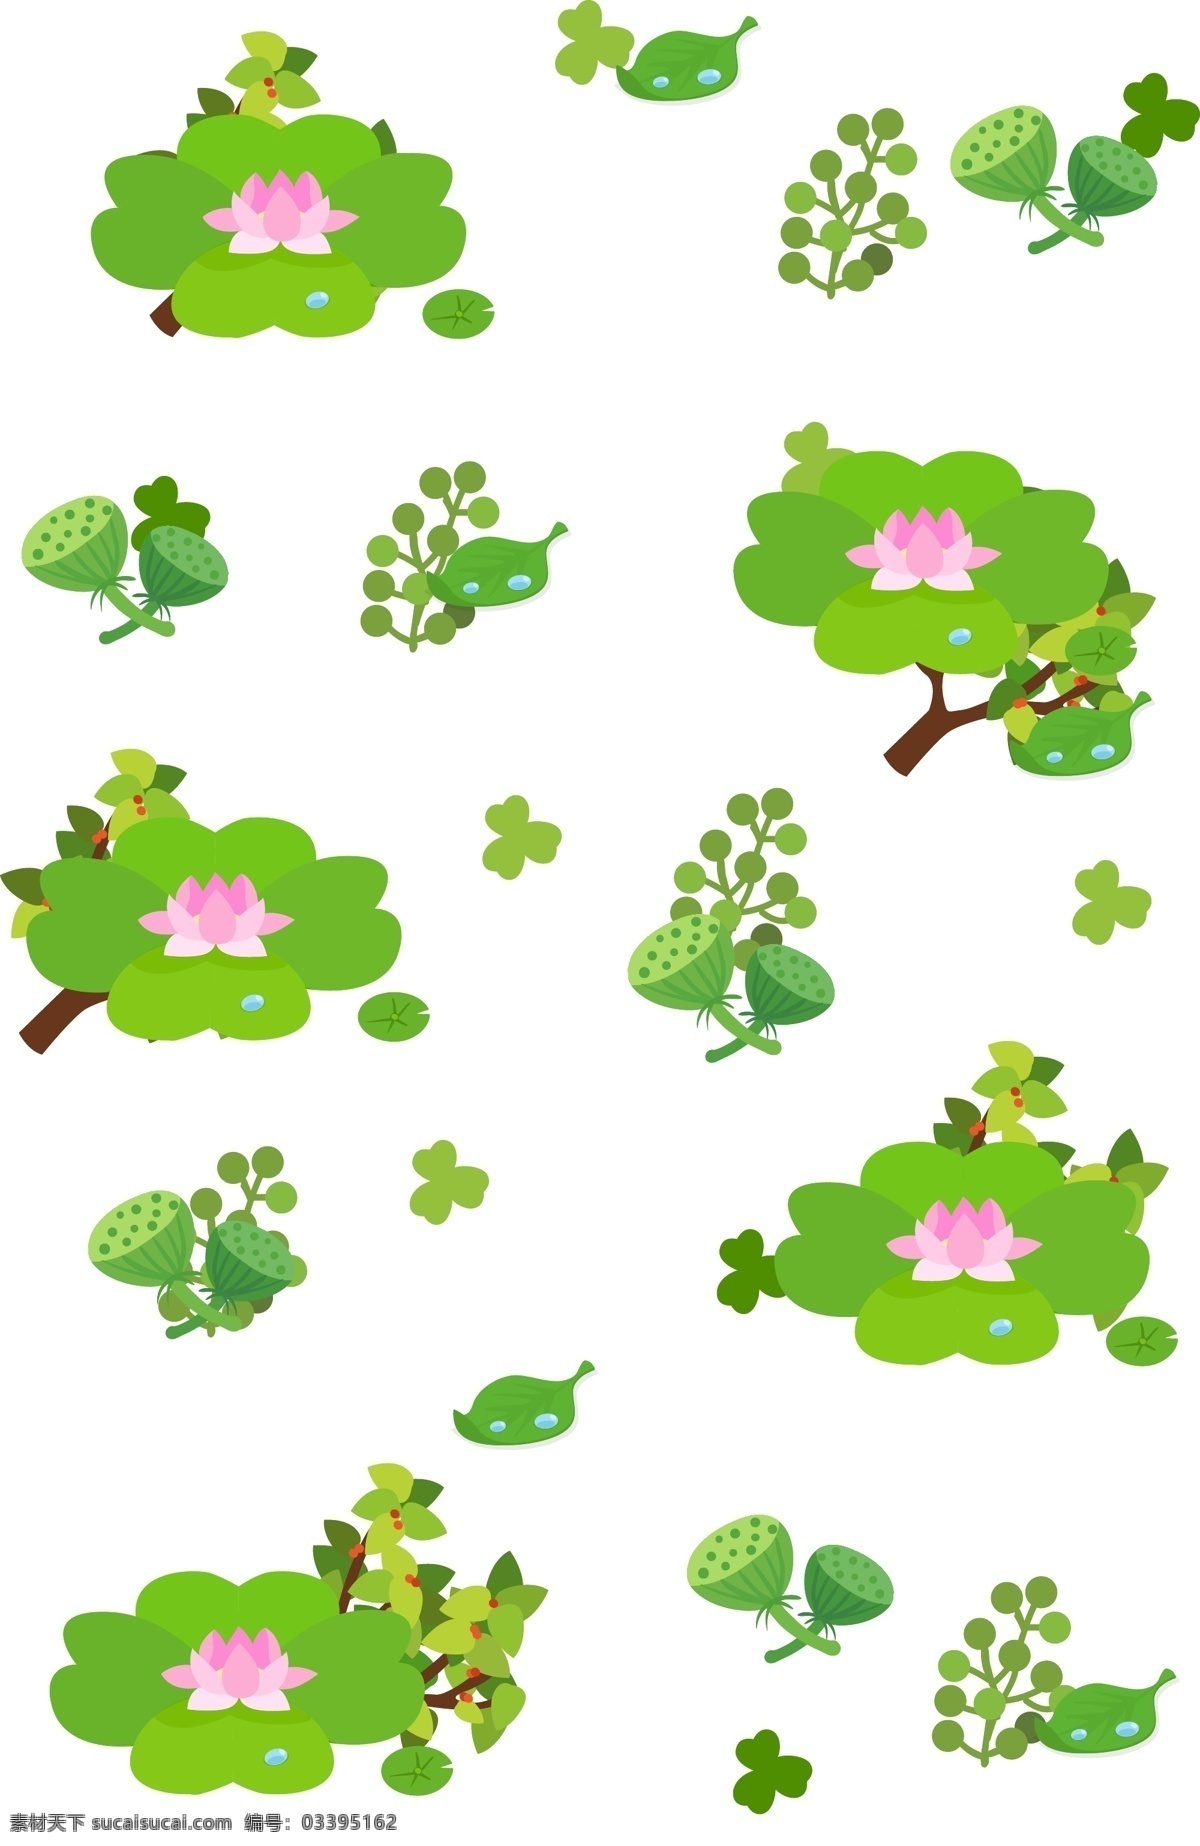 手绘 四季 树叶 底纹 绿色的树叶 漂亮的底纹 卡通插画 手绘底纹插画 四季底纹插画 漂亮的小树